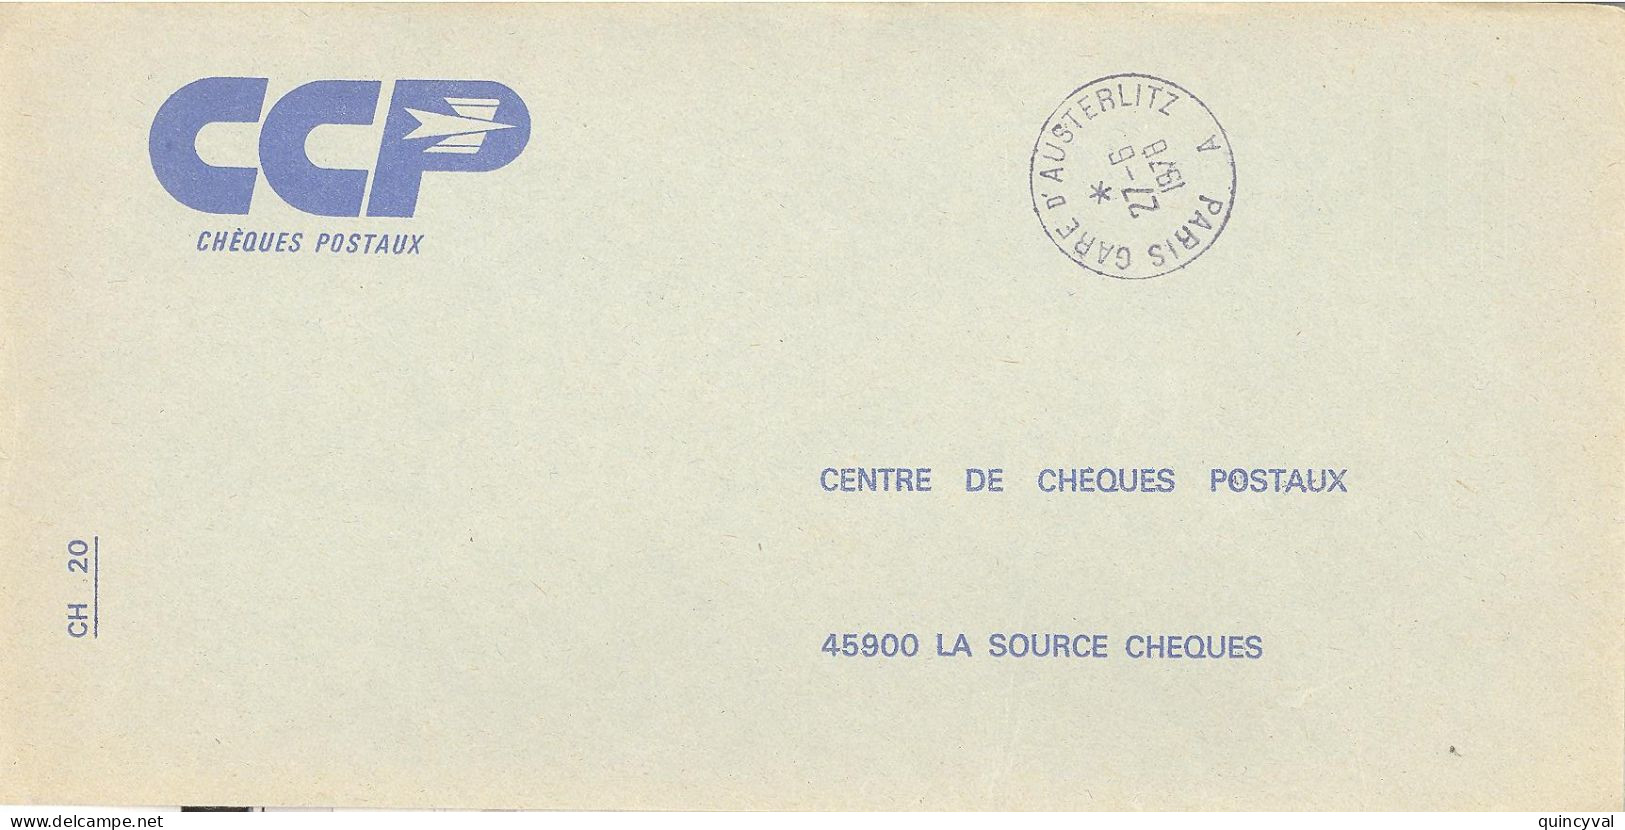 PARIS GARE D'AUSTERLITZ  A    Lettre Enveloppe Des CCP Ob 27 6 1978 - Handstempels